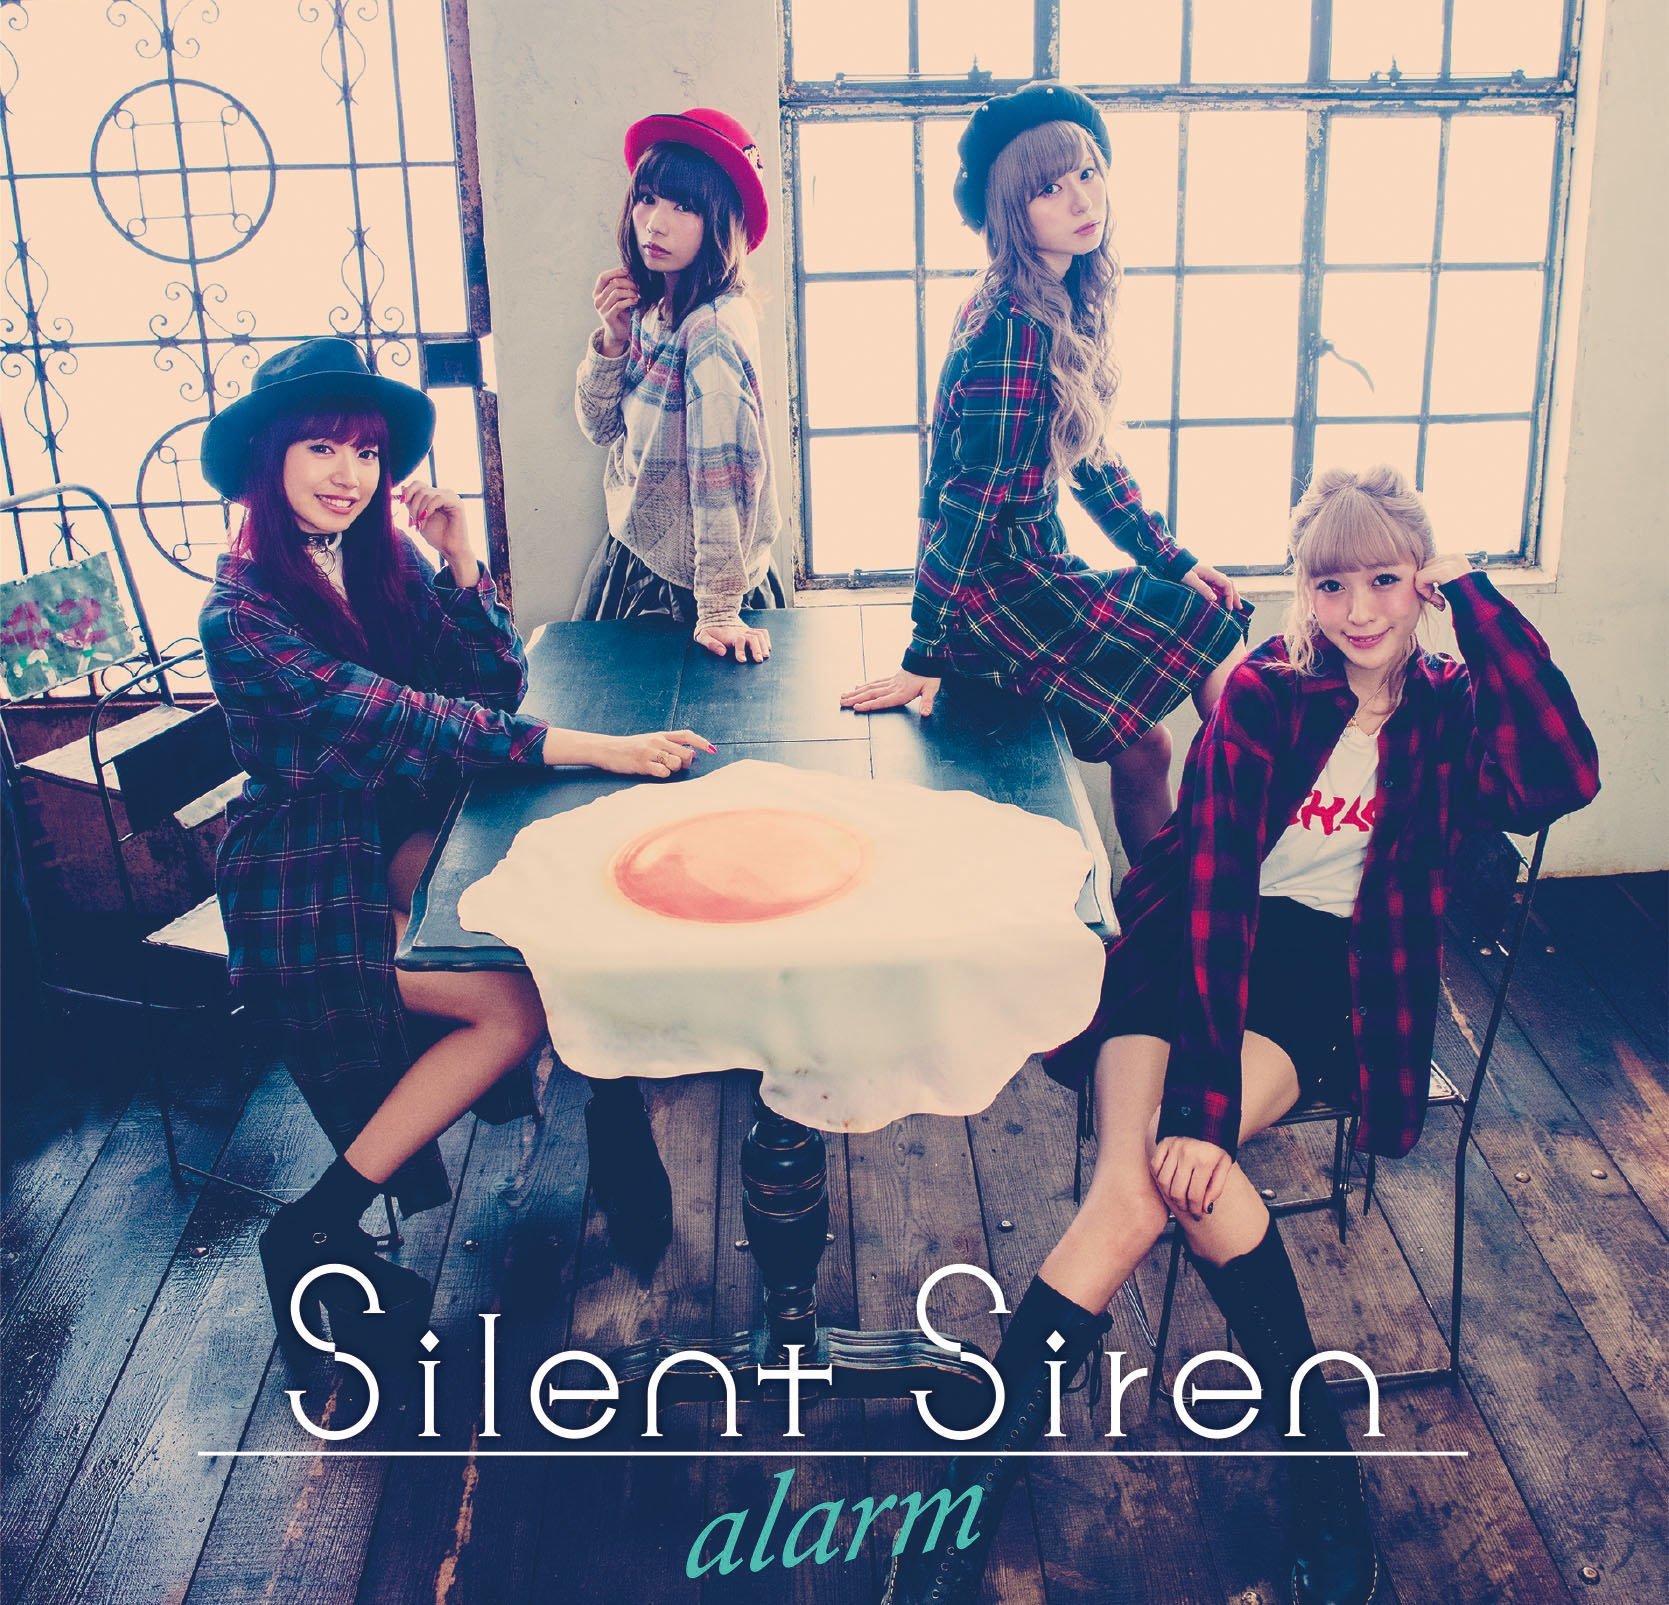 alarm(日本女子樂隊Silent Siren發行的單曲)